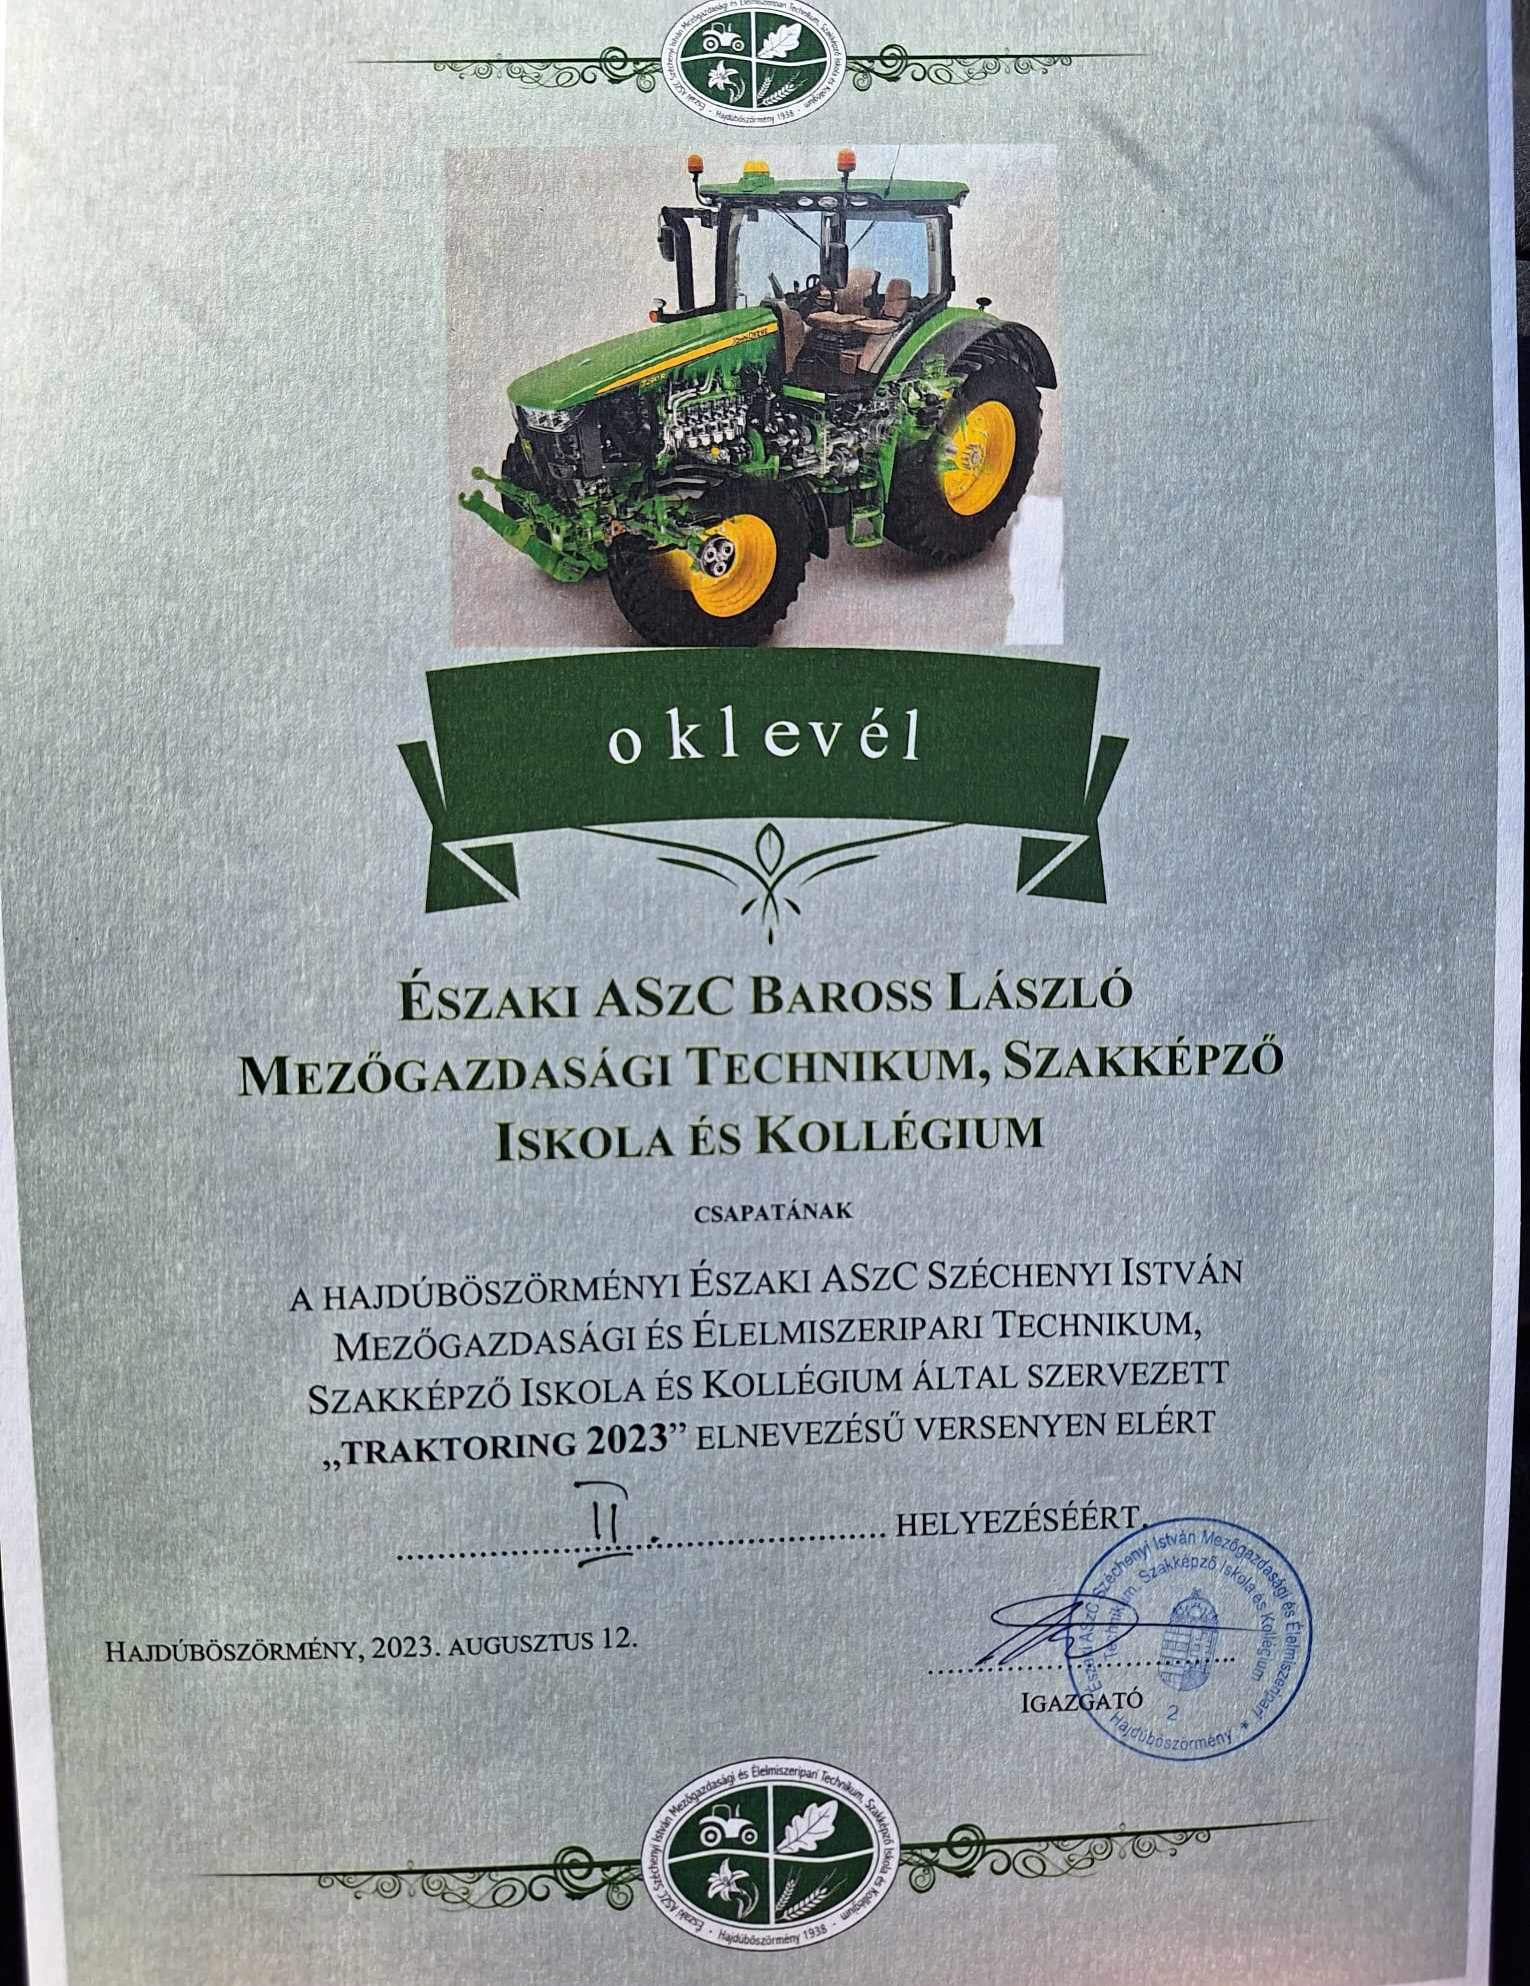 Egy zöld traktor képét tartalmazó bizonyítvány. A bizonyítvány szövege magyar nyelvű, megemlítve az Északi ASzC Baross László Mezőgazdasági Technikum csapatát és a "TraktorING 2023" versenyen elért eredményét. Az igazolás 2023. augusztus 12-én kelt.